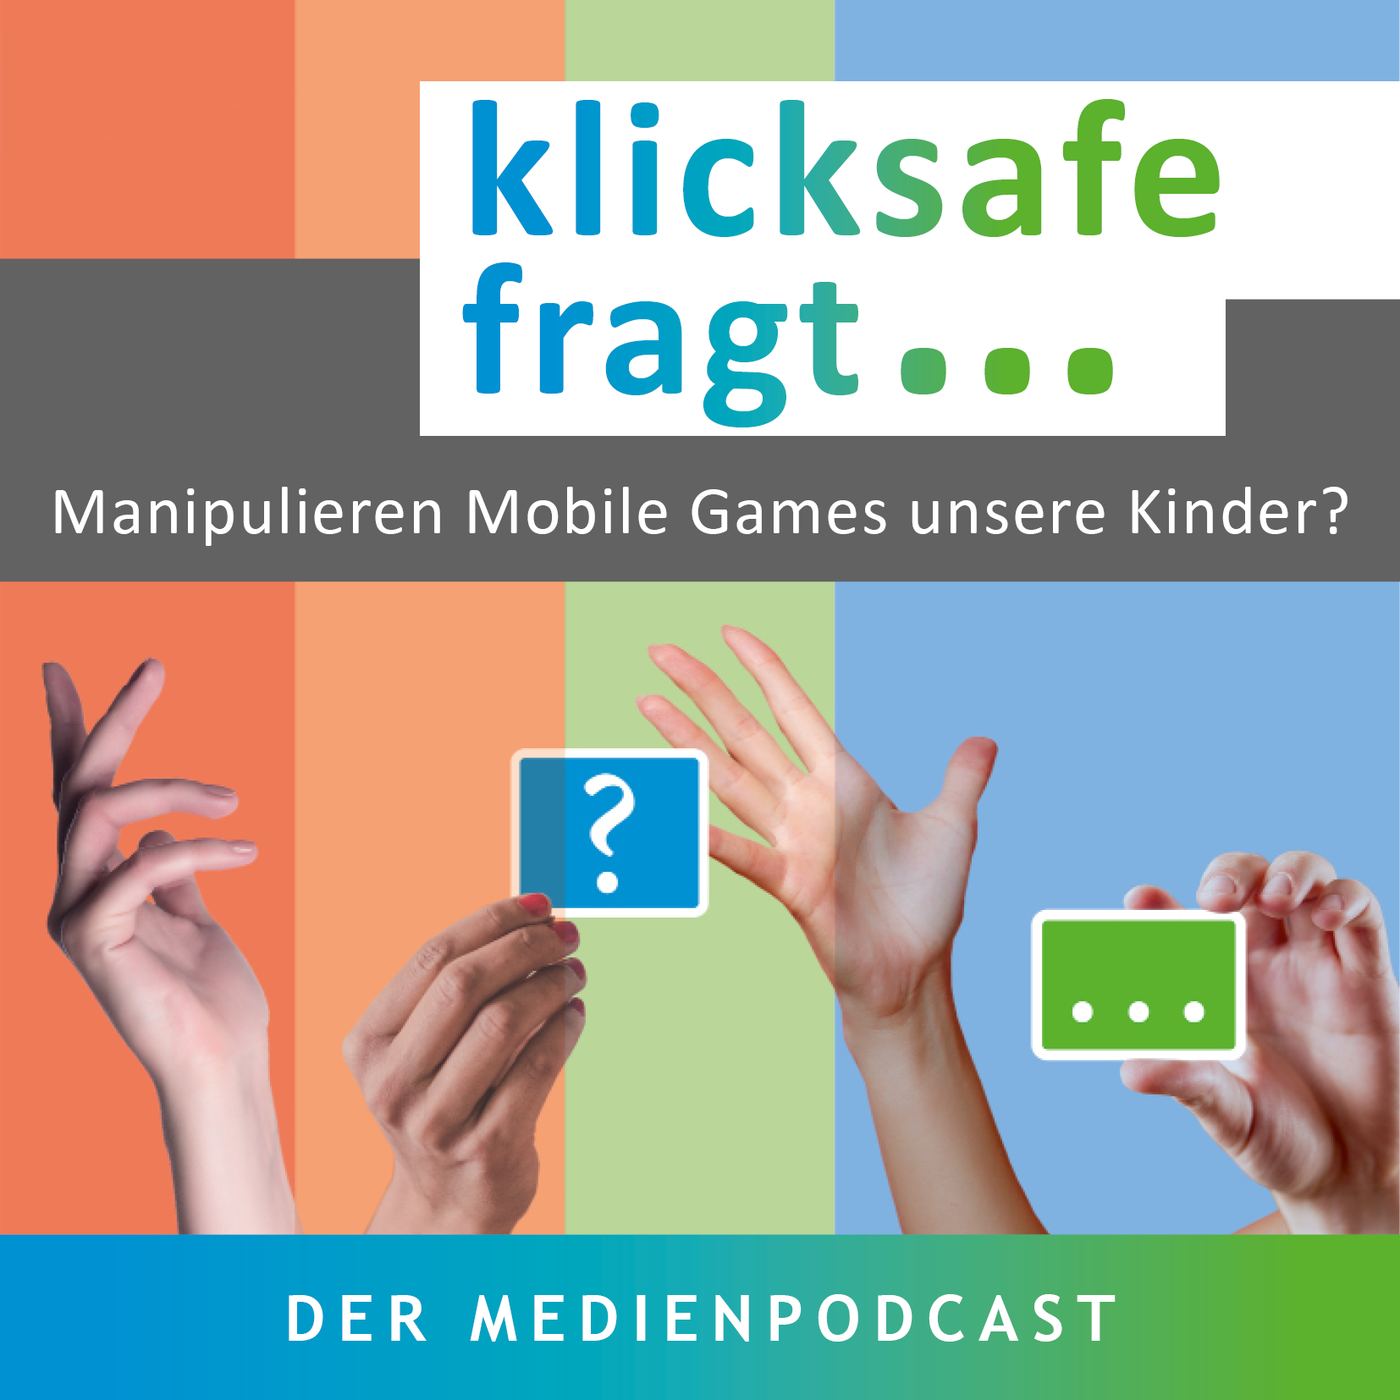 Manipulieren Mobile Games unsere Kinder?